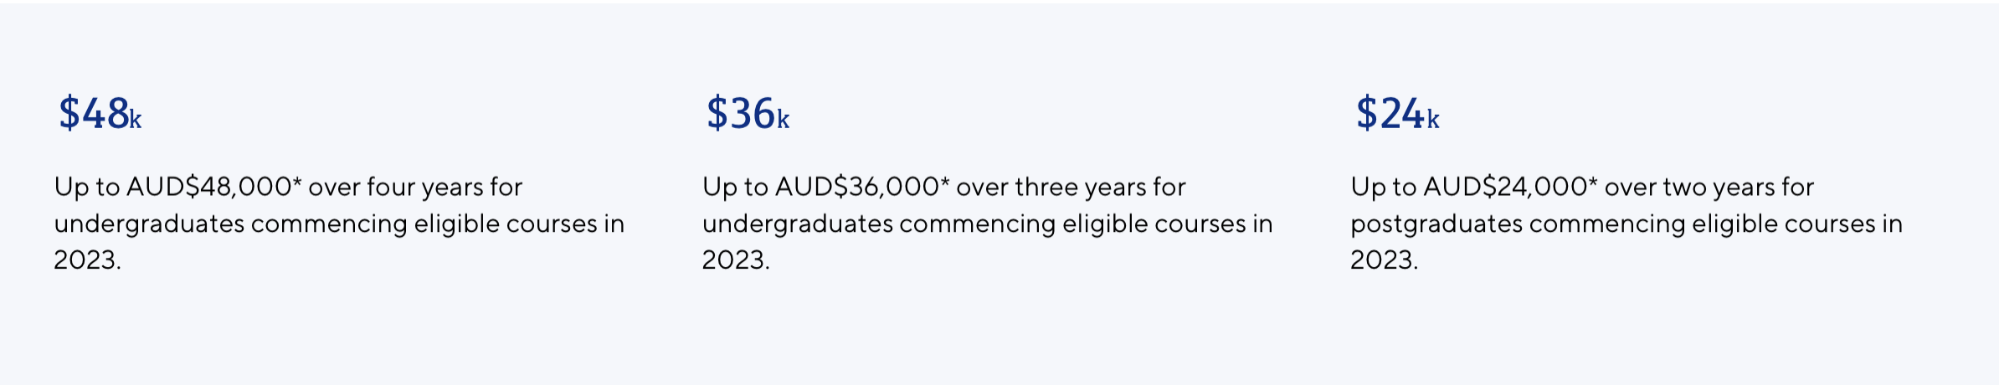 University deadlines for scholarships for upcoming Australia intake 2022 